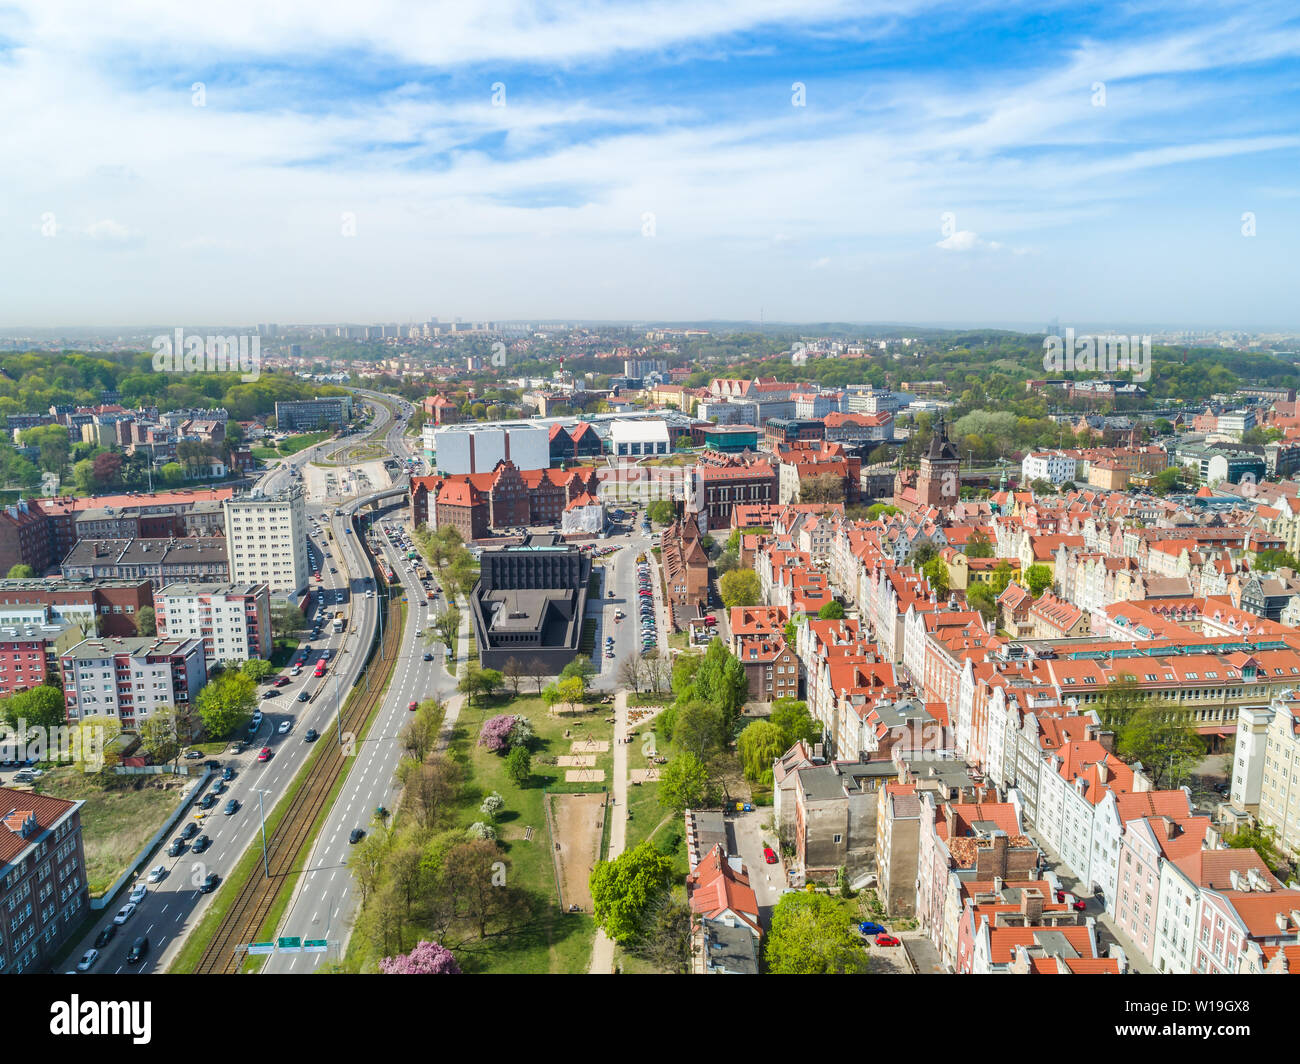 Gdańsk desde una vista de pájaro. Un paisaje urbano con una aparente teatro shakesperiano. Atracciones turísticas y monumentos de la ciudad vieja. Foto de stock